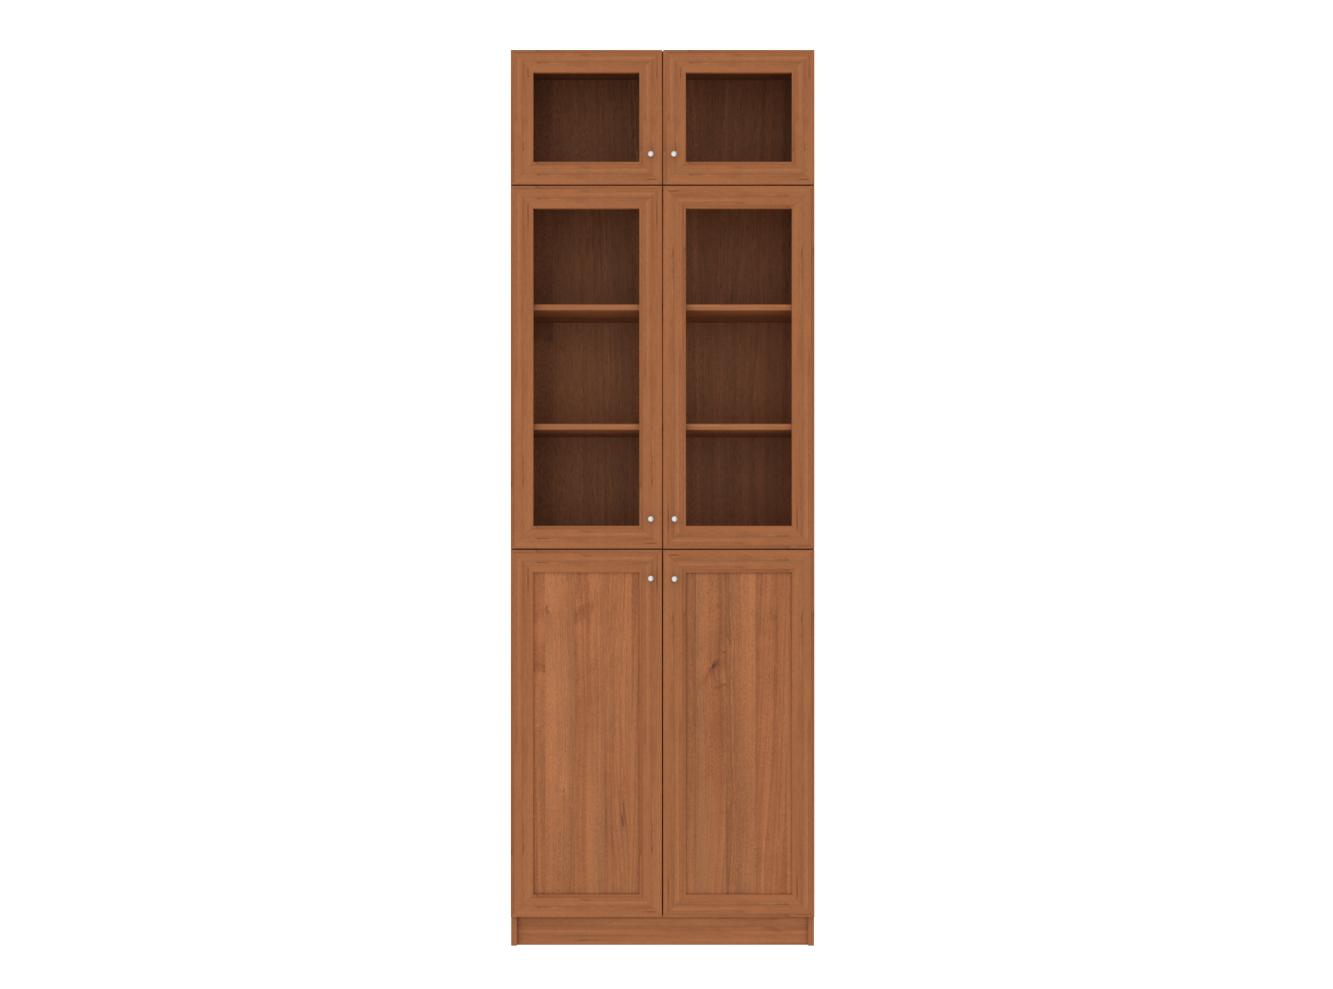  Книжный шкаф Билли 352 walnut guarneri ИКЕА (IKEA) изображение товара